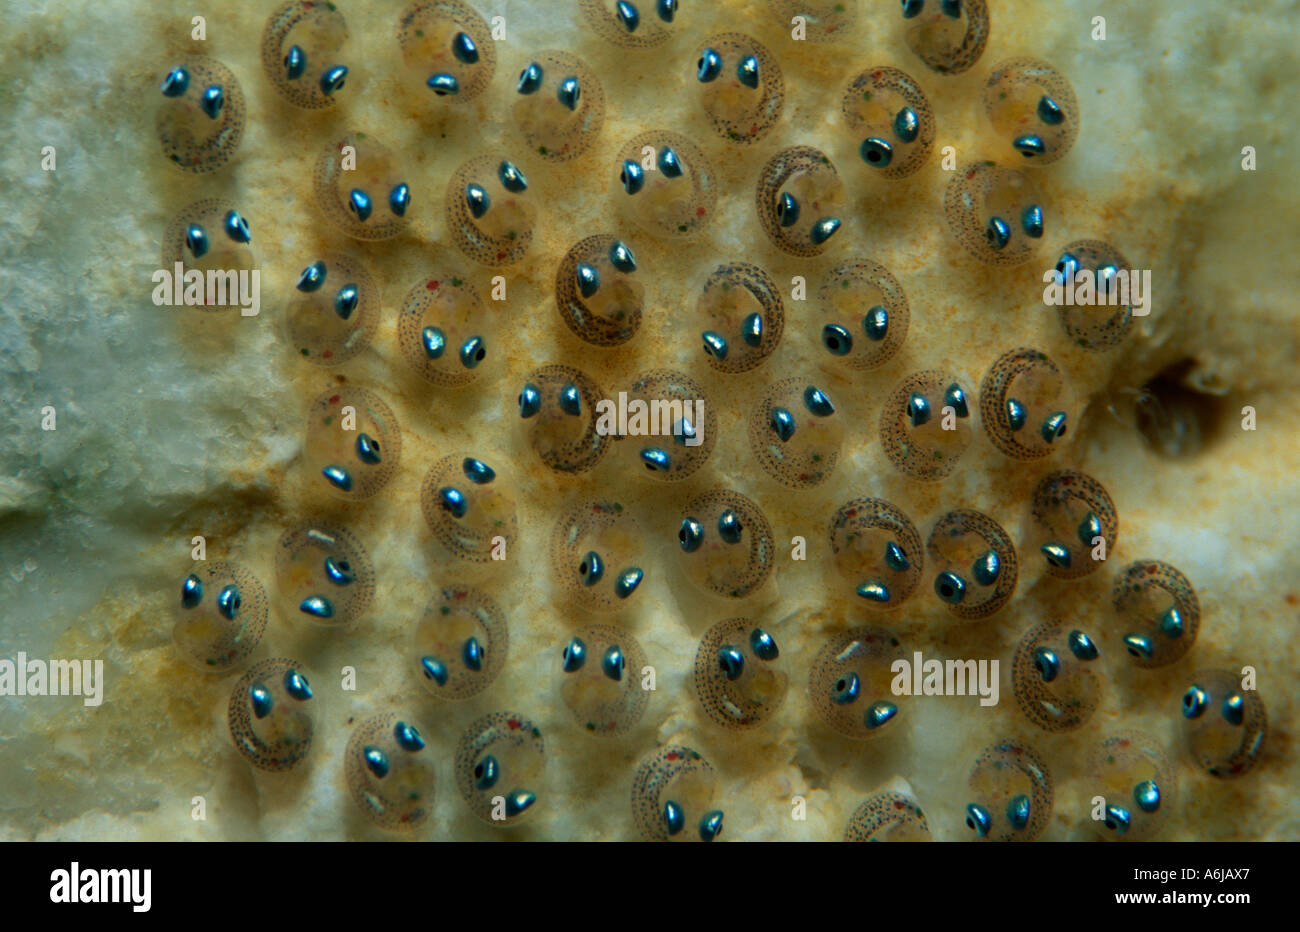 eggs of small marine fish, Lepadogaster lepadogaster Stock Photo